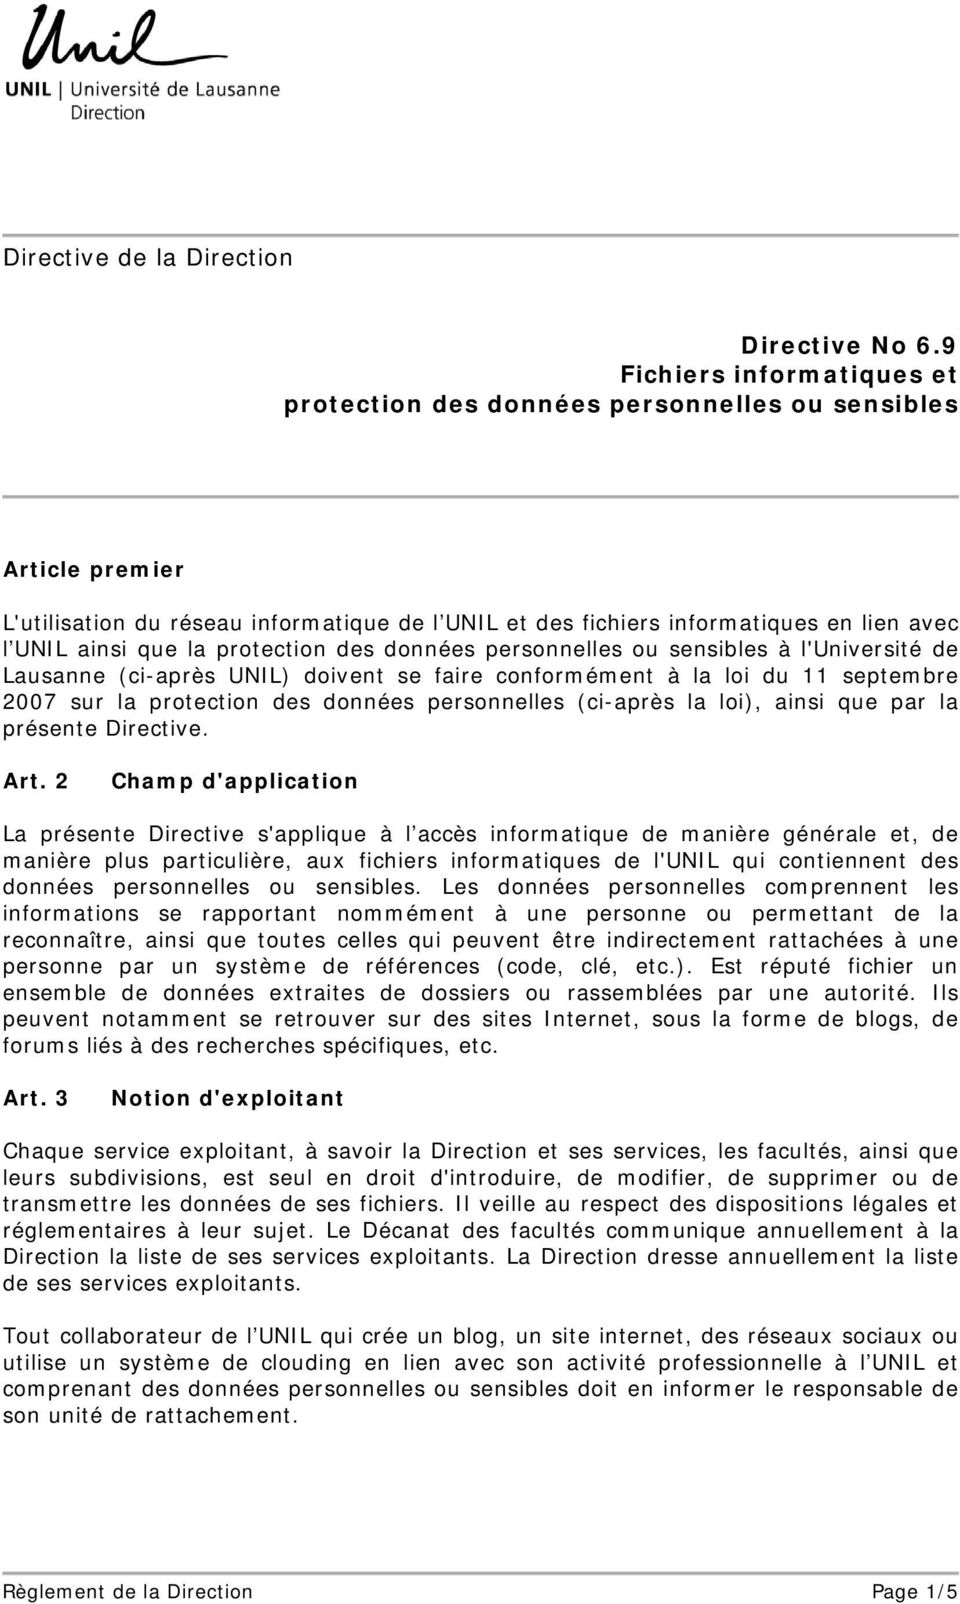 la protection des données personnelles ou sensibles à l'université de Lausanne (ci-après UNIL) doivent se faire conformément à la loi du 11 septembre 2007 sur la protection des données personnelles